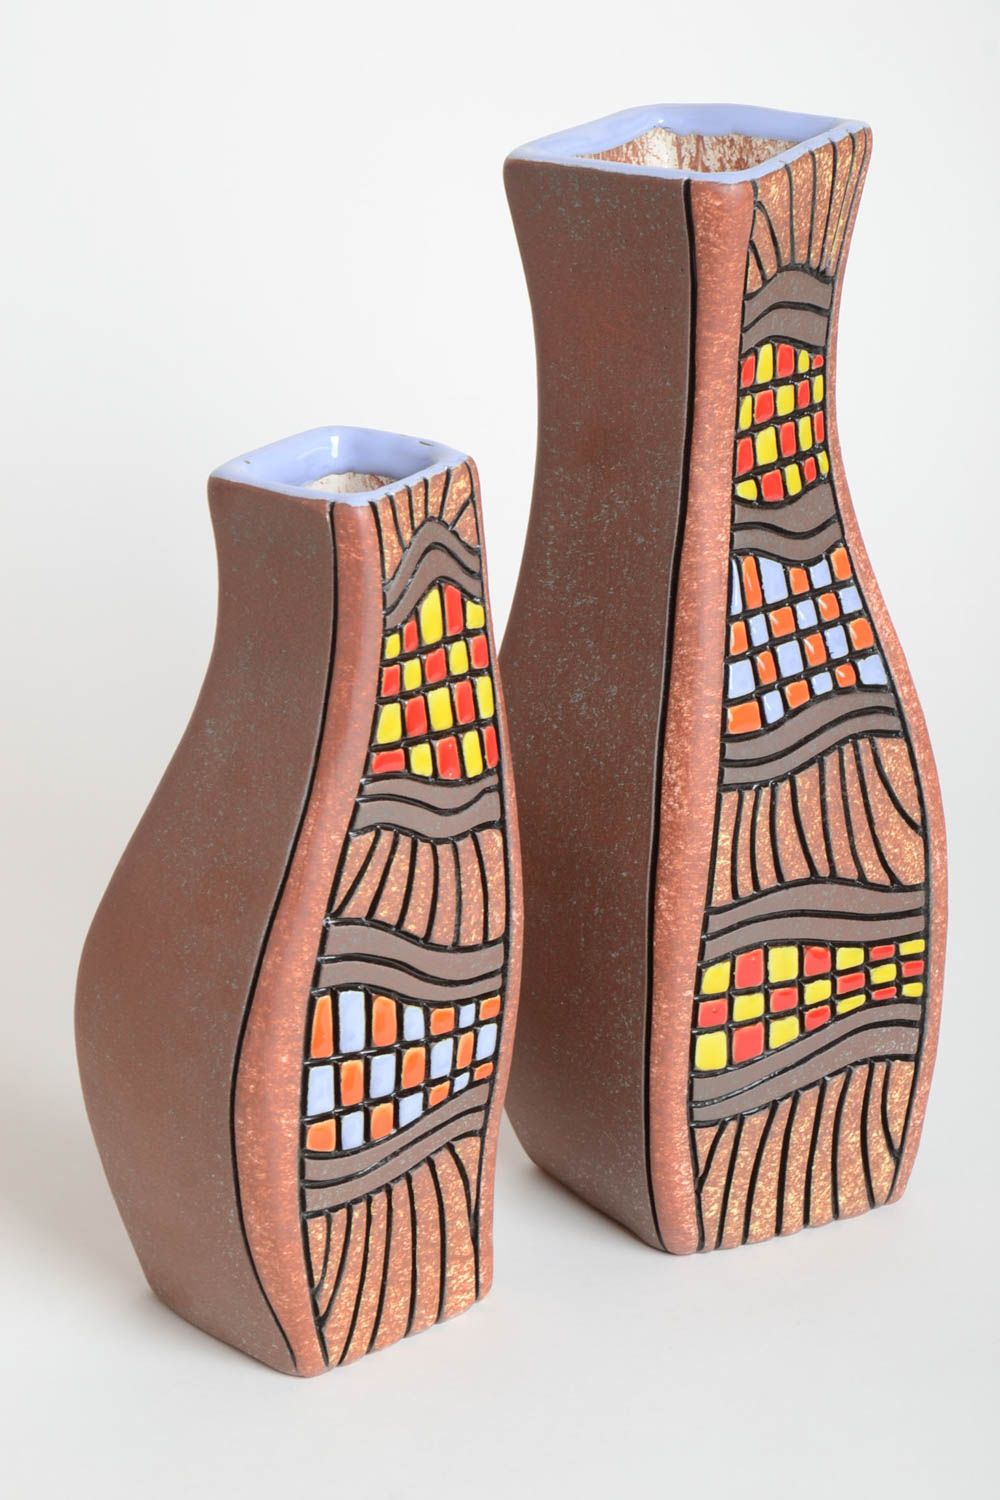 Handmade Keramik Vasen Deko Wohnzimmer Vasen aus Ton exklusiv bemalt 2 Stück foto 2